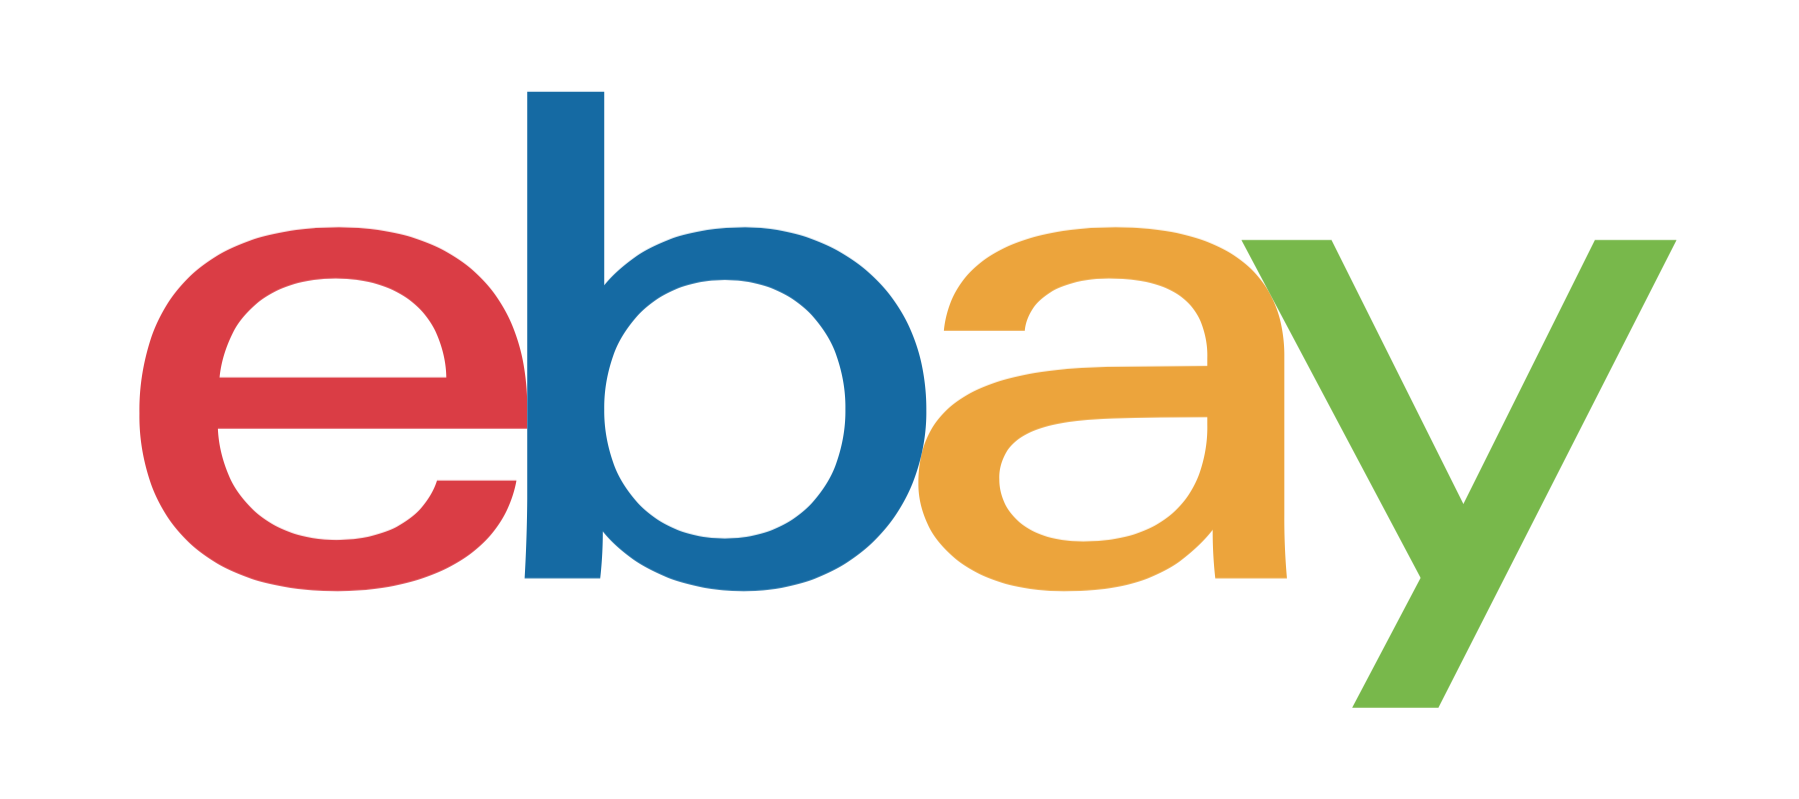 Partnership Company Logo eBay